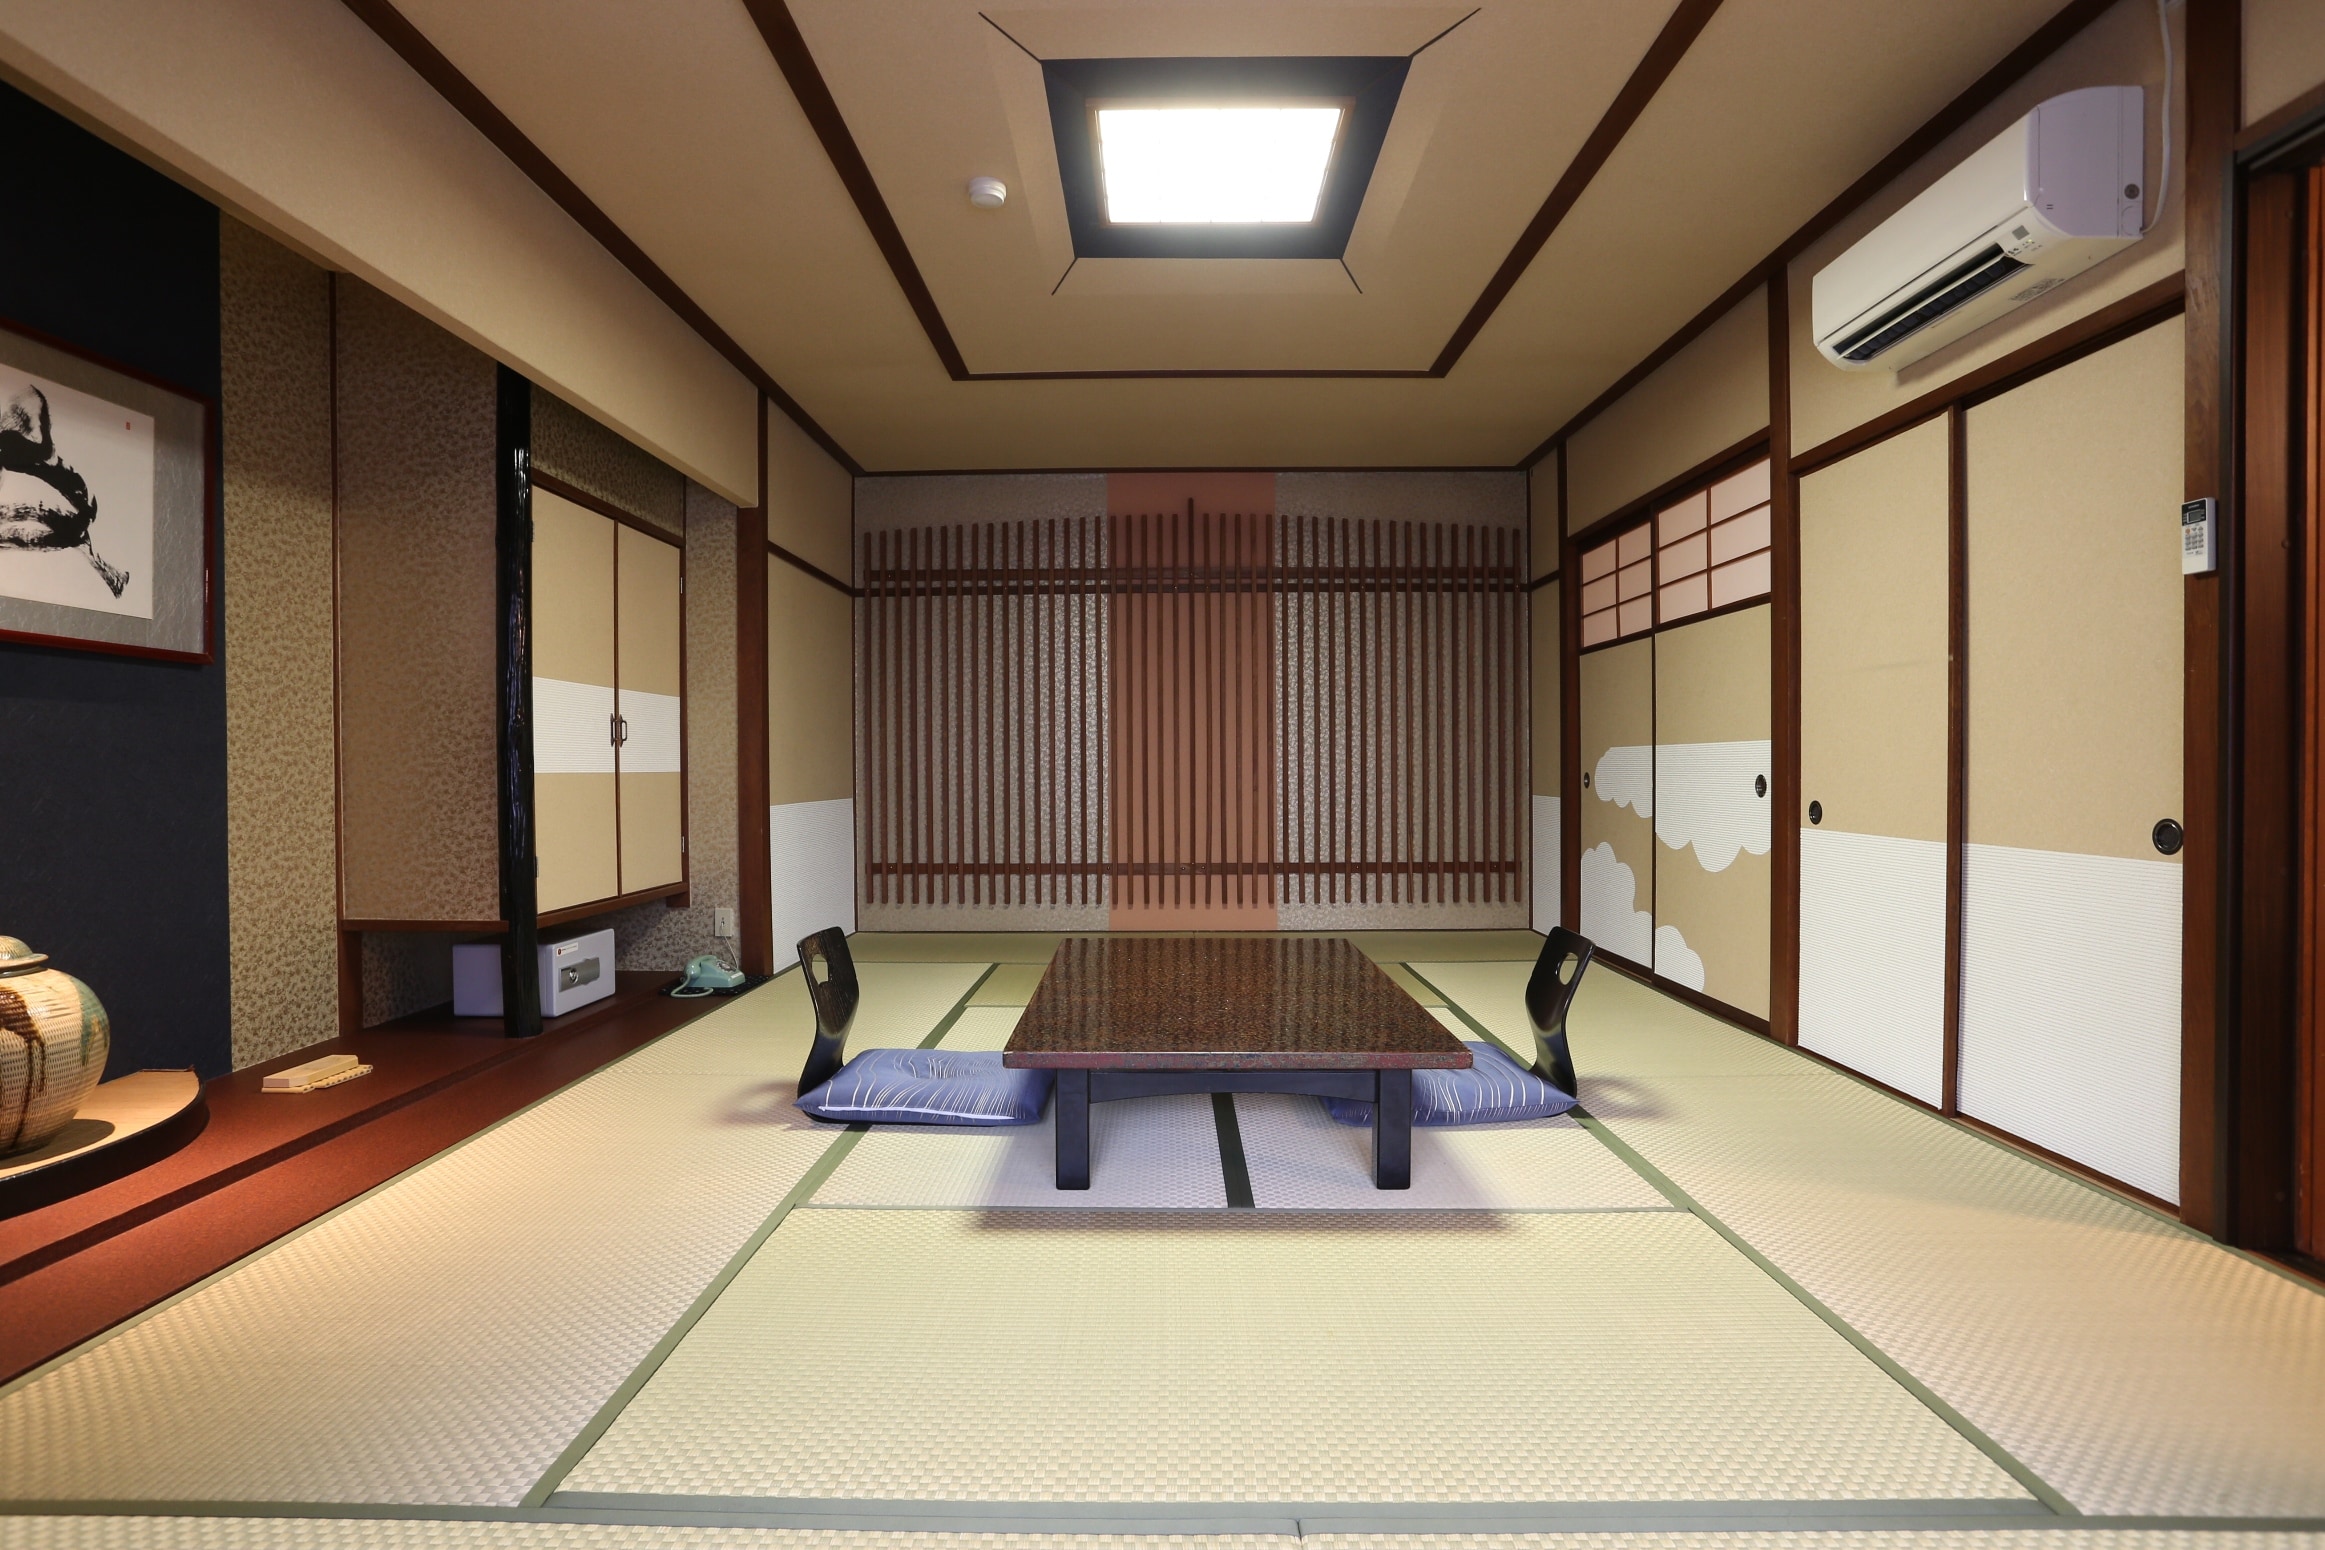 ห้องสไตล์ญี่ปุ่น+ห้องนอน